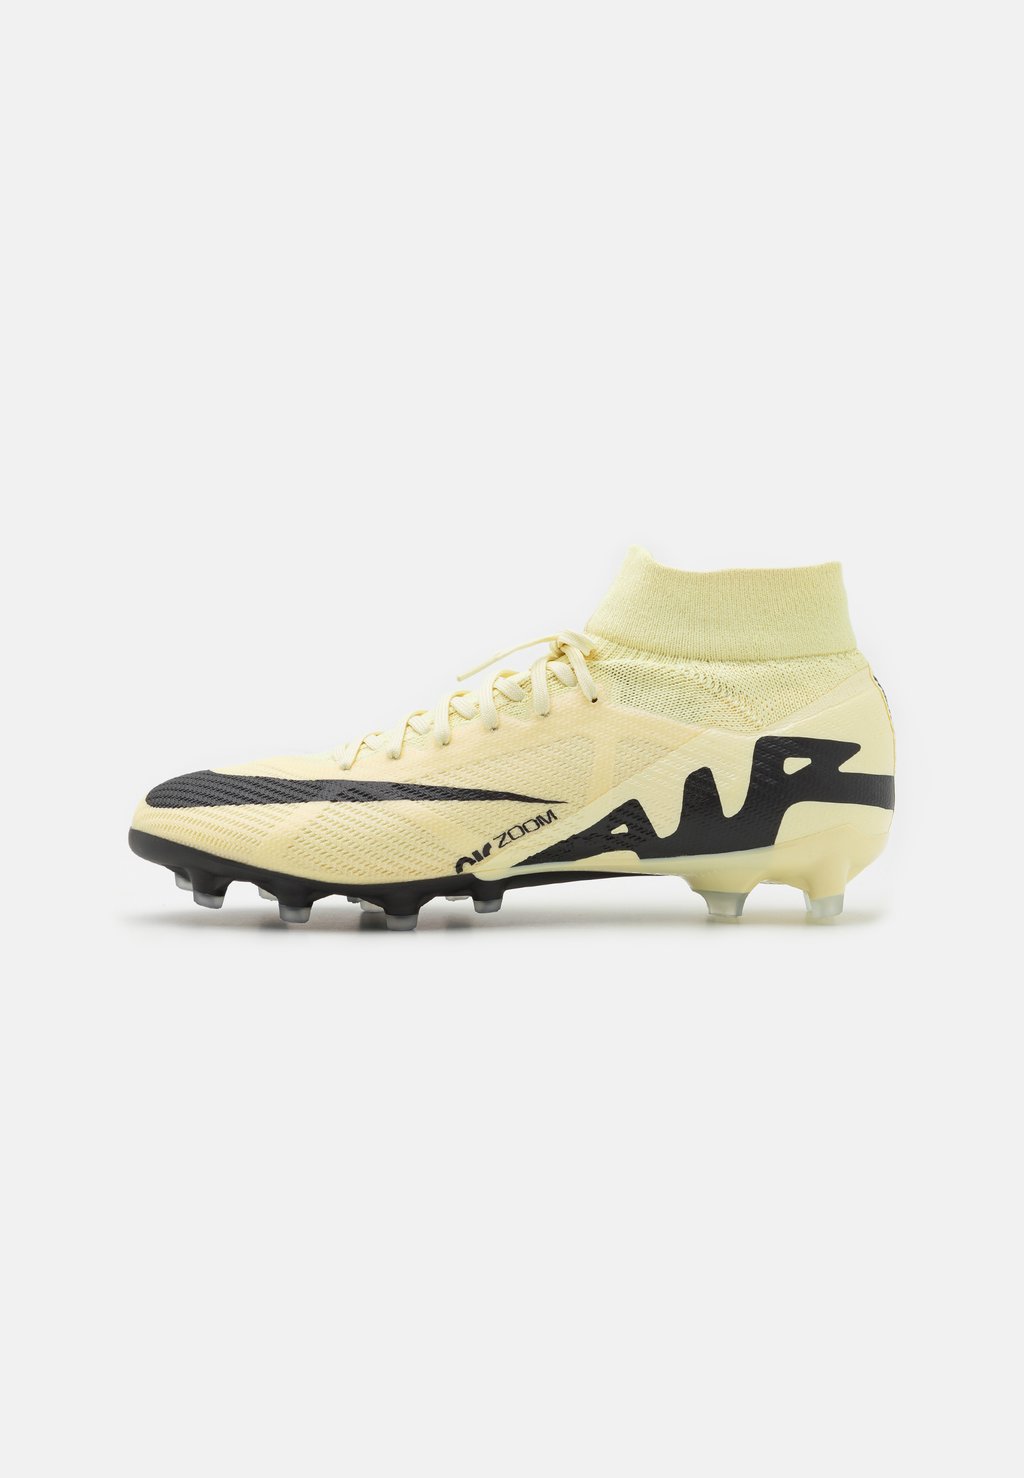 Кроссовки для мини-футбола с шипами Zoom Mercurial 9 Pro Ag Nike, цвет yellow/black цена и фото